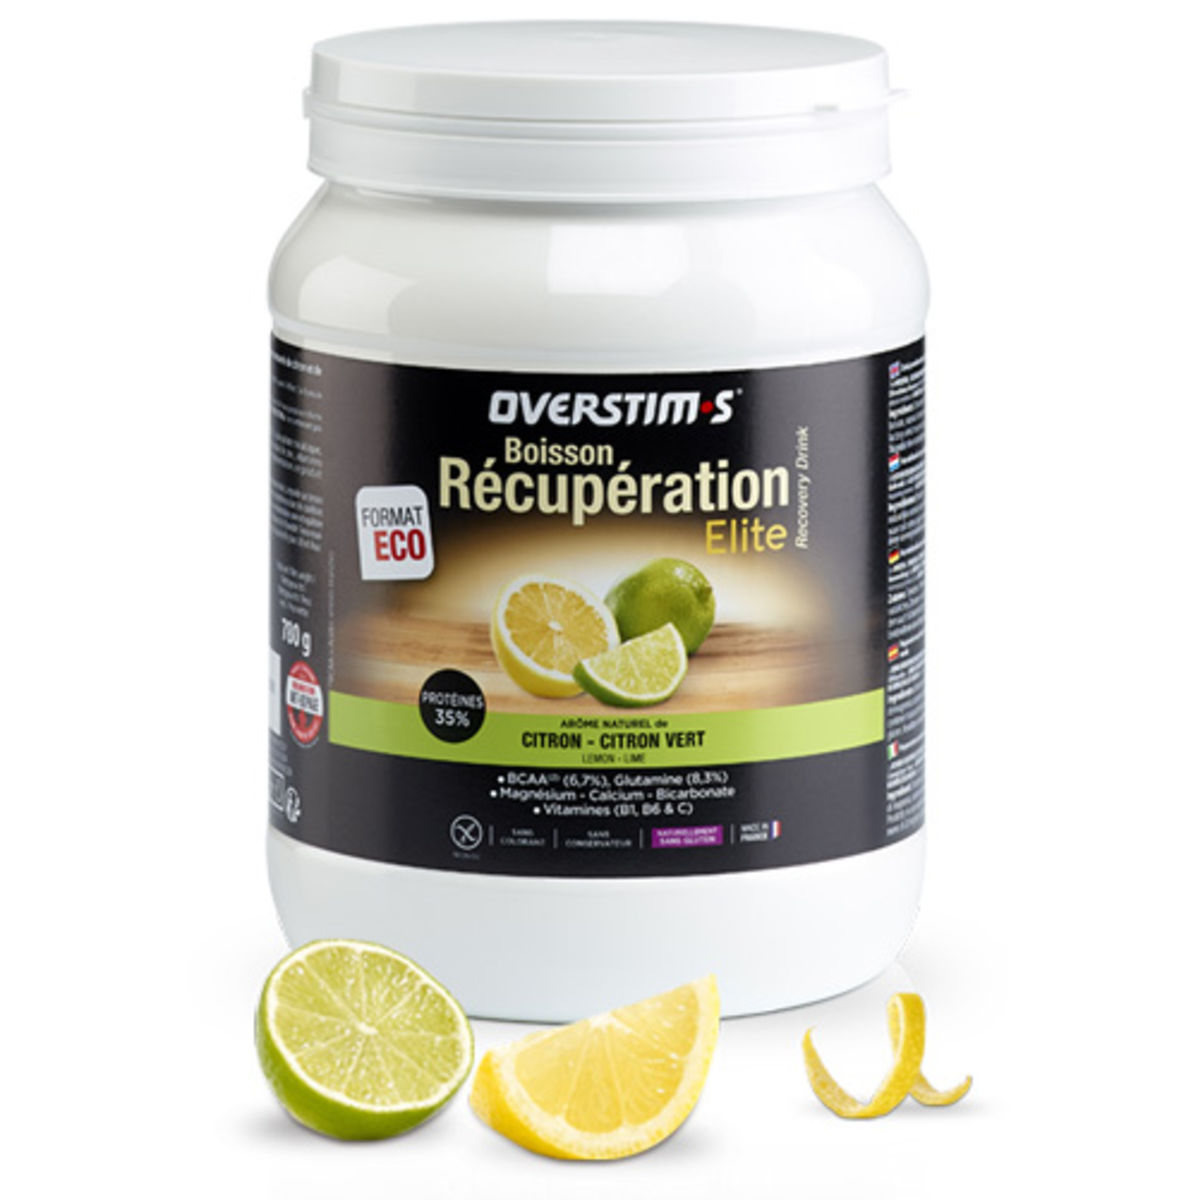 Boisson de récupération Elite Overstim.s - 780 g - Citron, citron vert